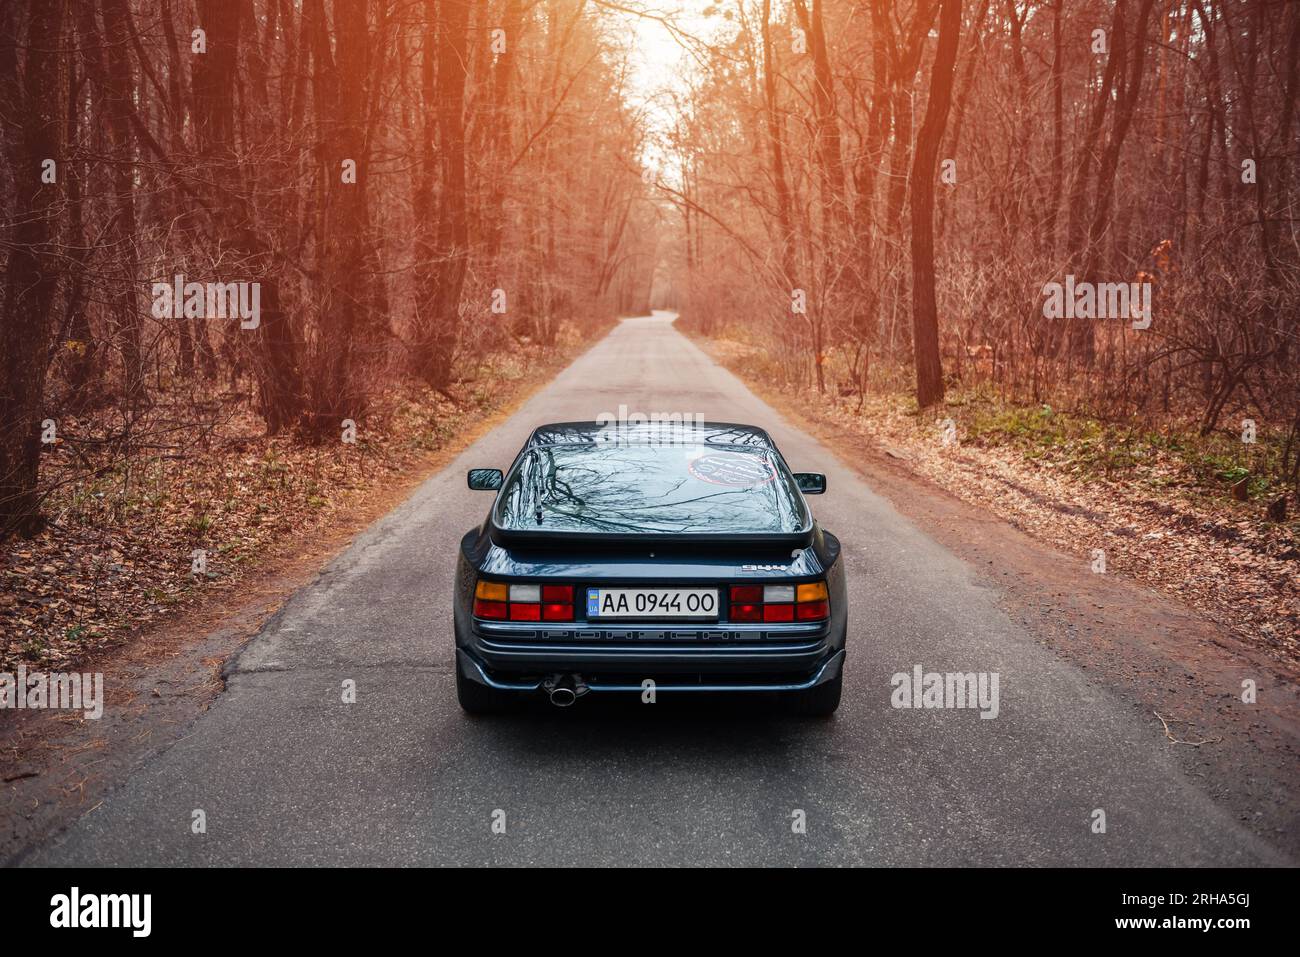 Videogame di corse ma nella vita reale: Porsche 944 blu scuro su una strada stretta attraverso una foresta. Mi piaceva giocare a NFS quando era piccolo, ora ricreando momenti Foto Stock